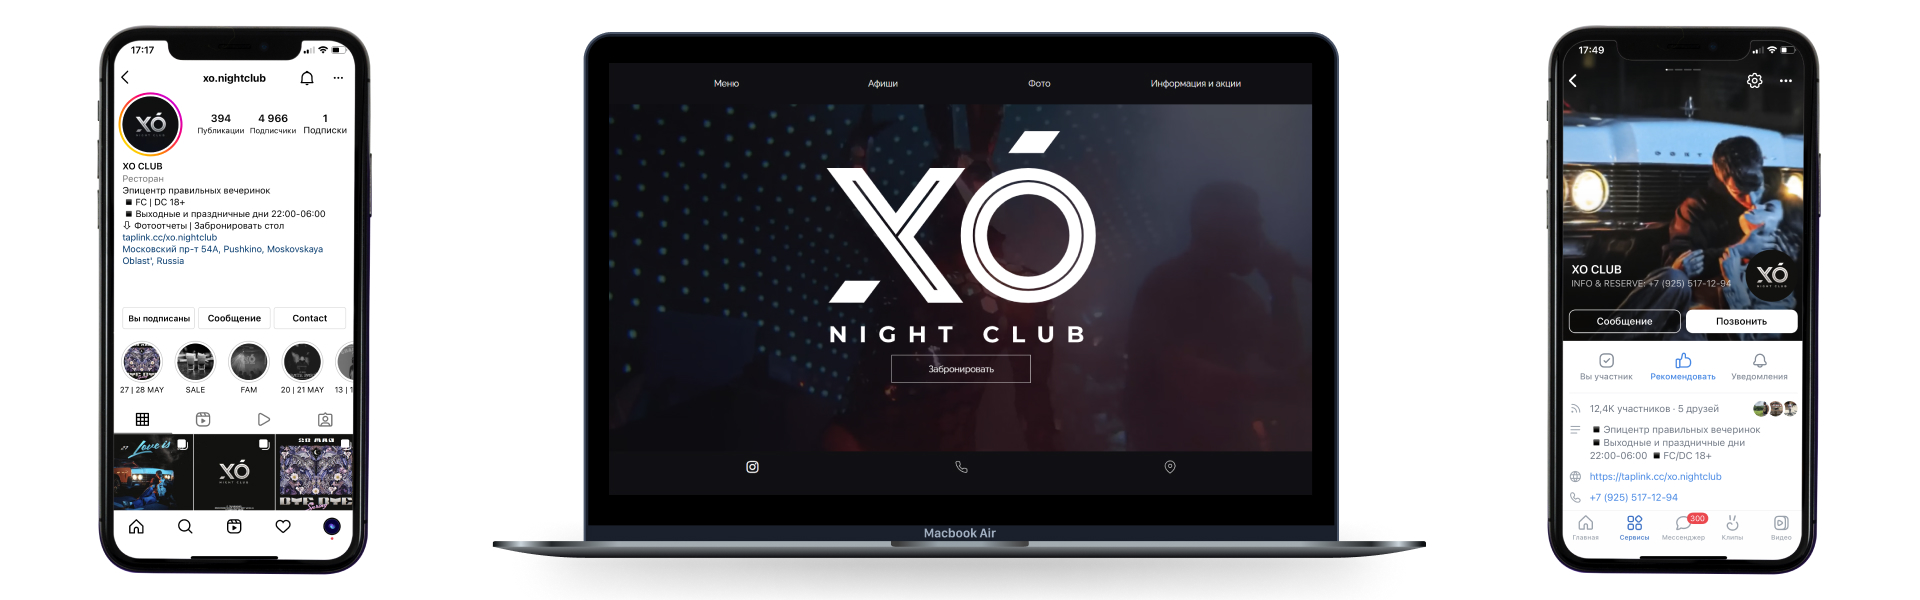 Ночной клуб
XO CLUB